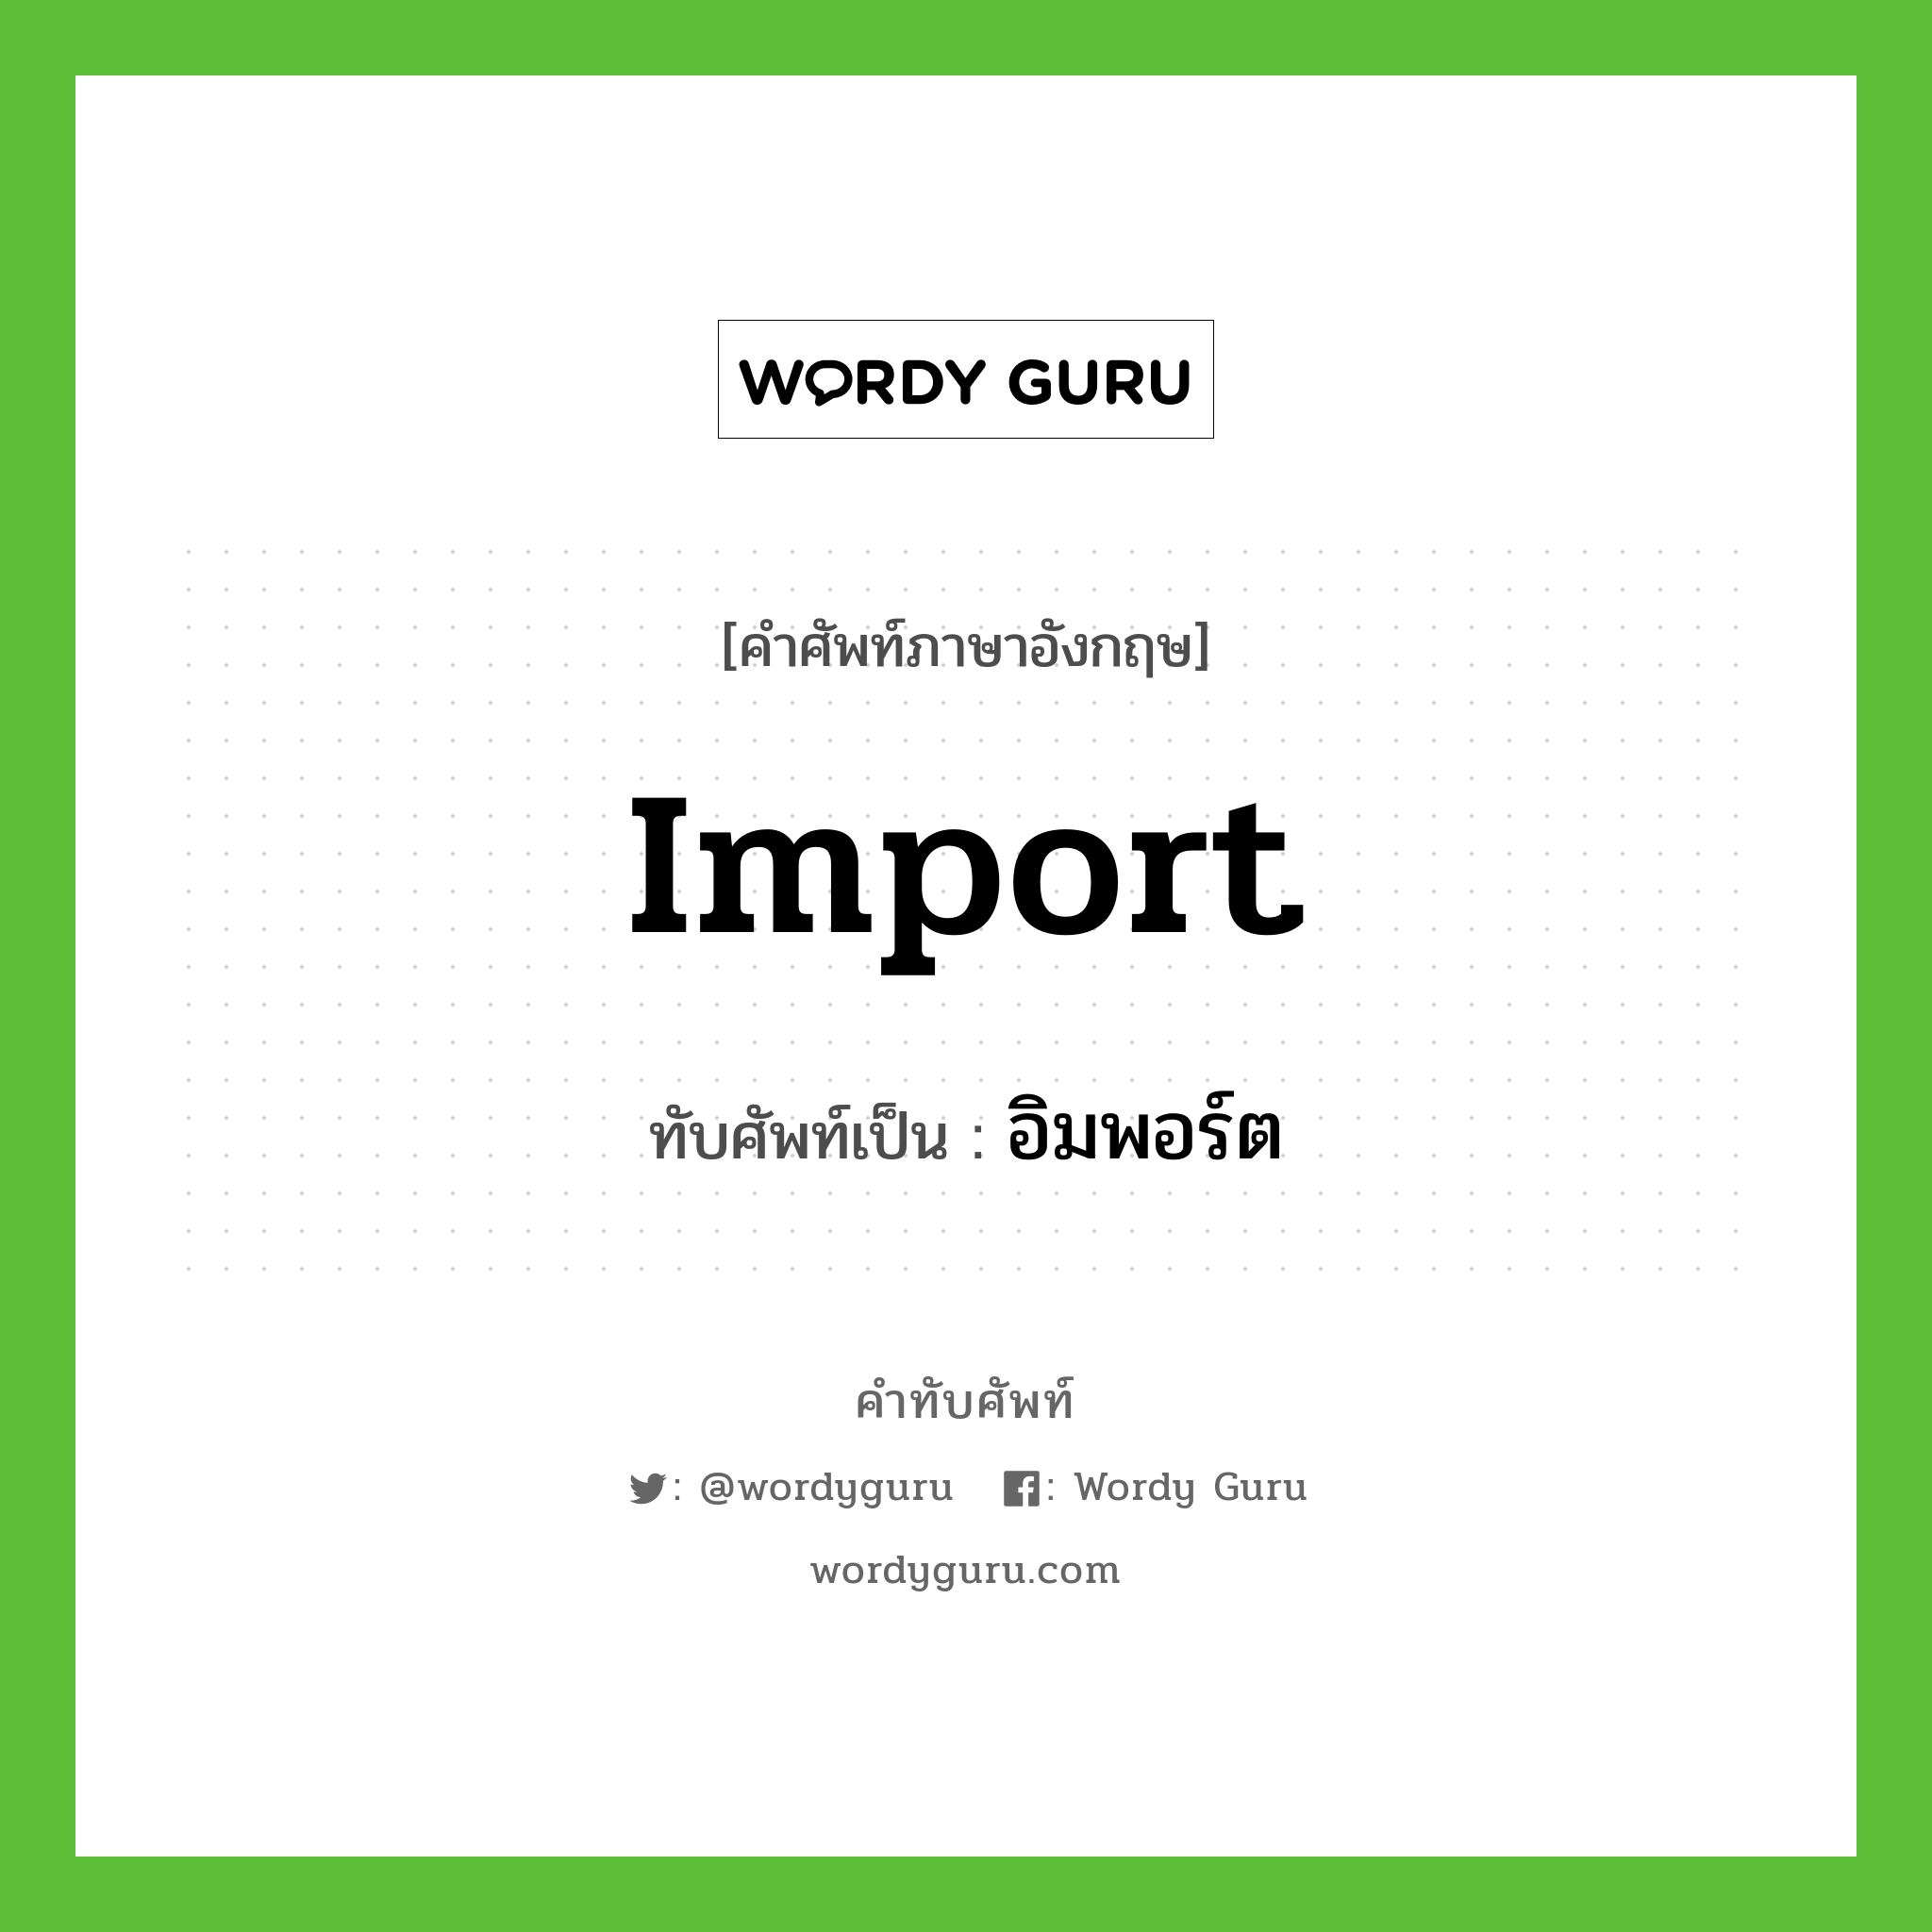 Import เขียนเป็นคำไทยว่าอะไร?, คำศัพท์ภาษาอังกฤษ import ทับศัพท์เป็น อิมพอร์ต